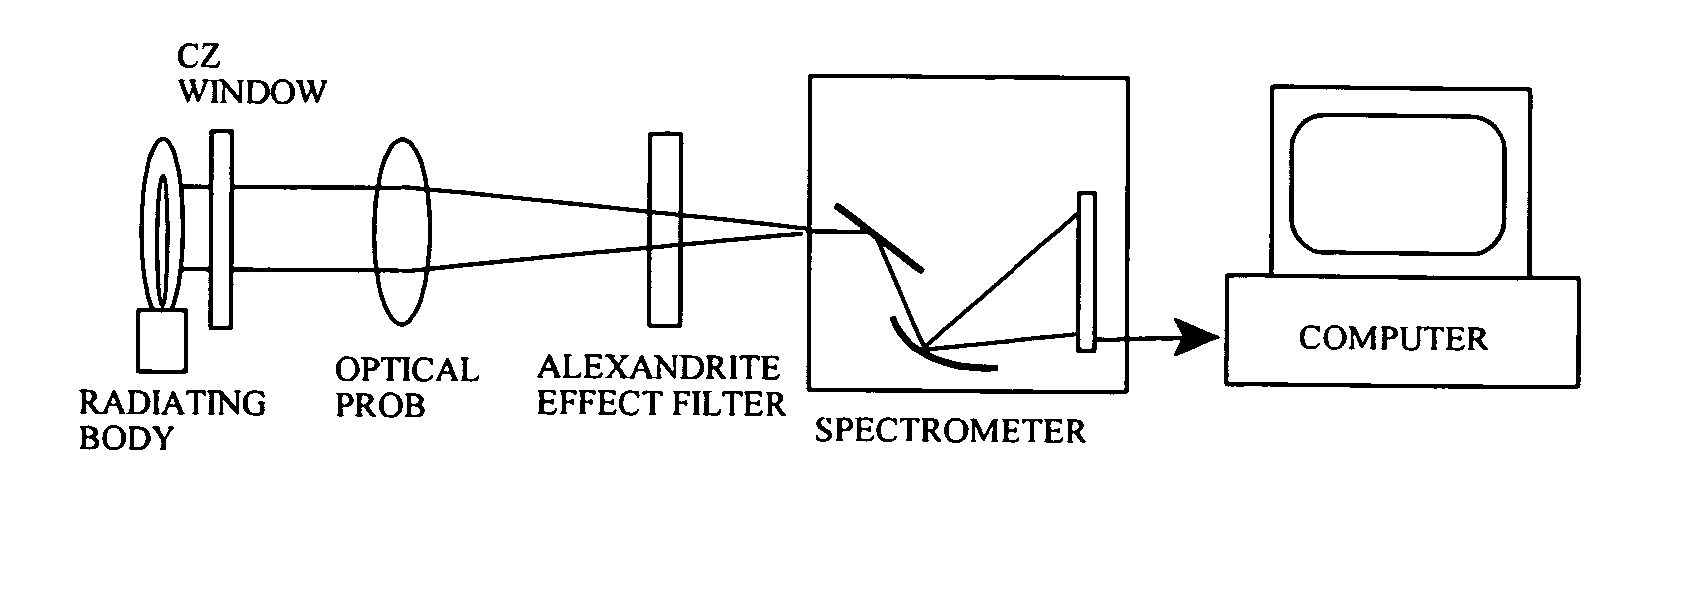 Temperature measurement apparatuses and method utilizing the alexandrite effect